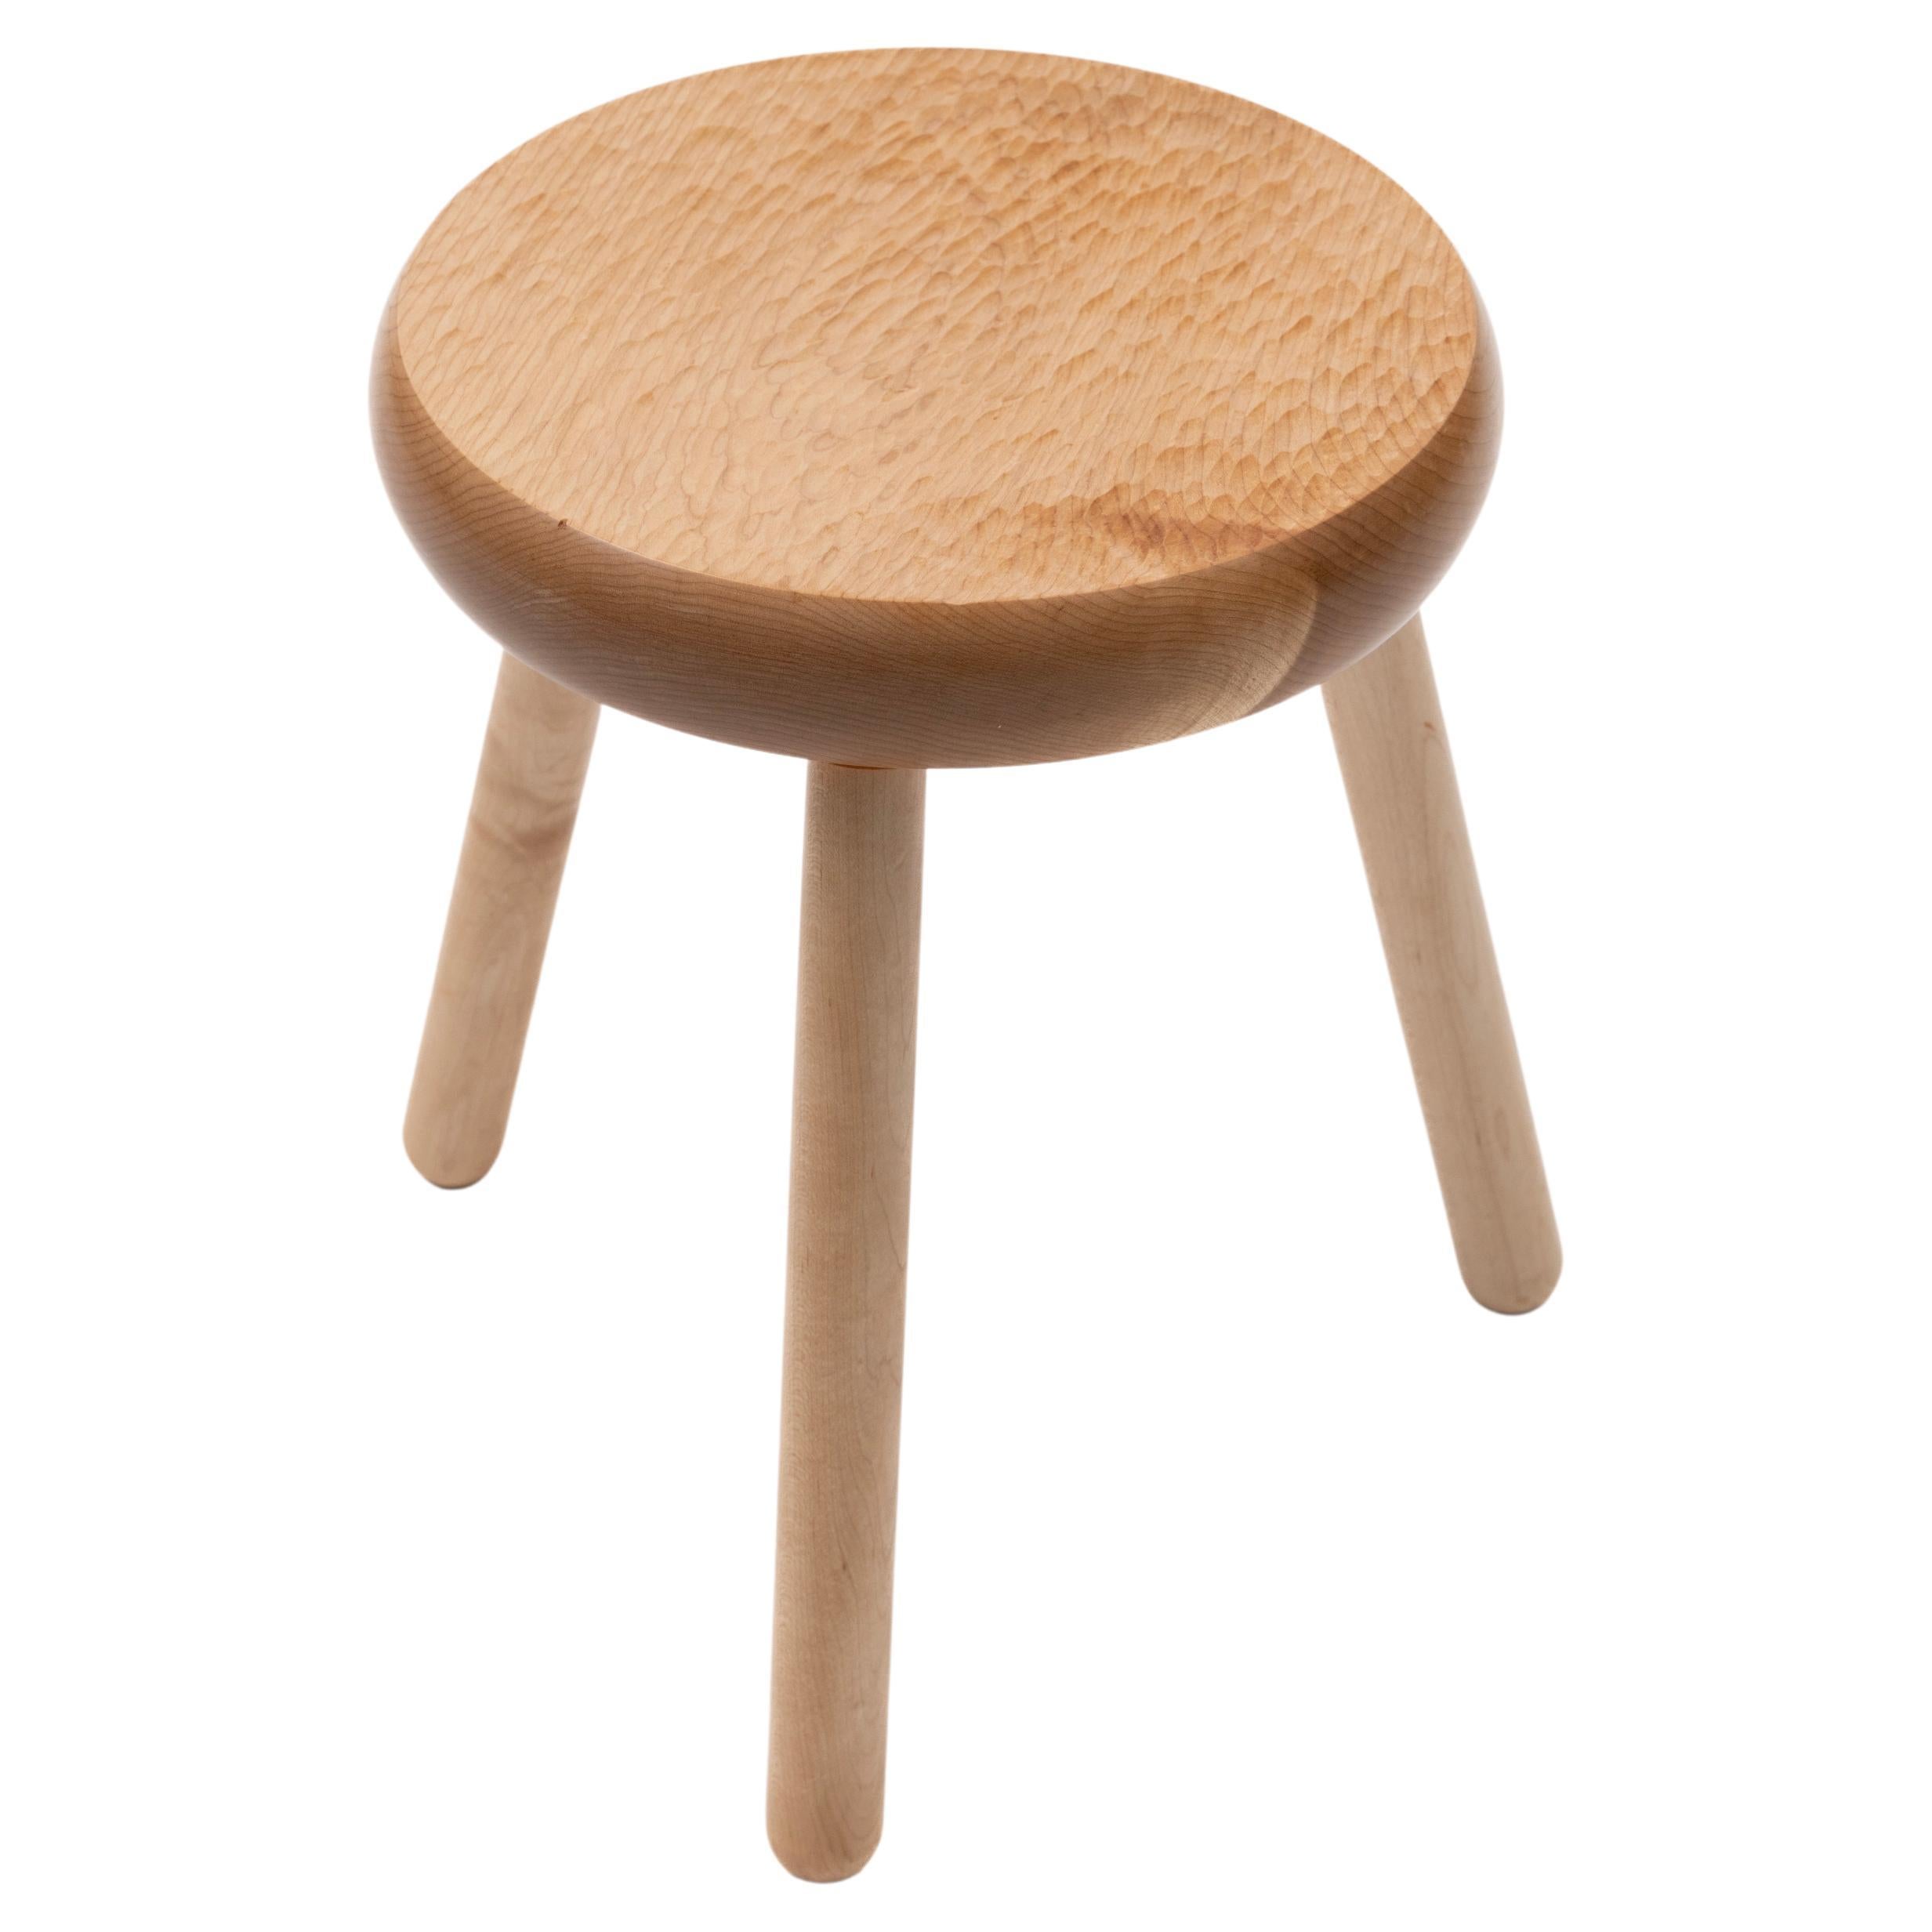 Pièce de mobilier polyvalente, le tabouret Dibbet peut servir de siège, d'ottoman ou de table d'appoint. Rappelle les meubles Shaker ou les premiers meubles Frontier. L'assise épaisse est sculptée à la main avec une légère concavité qui laisse une